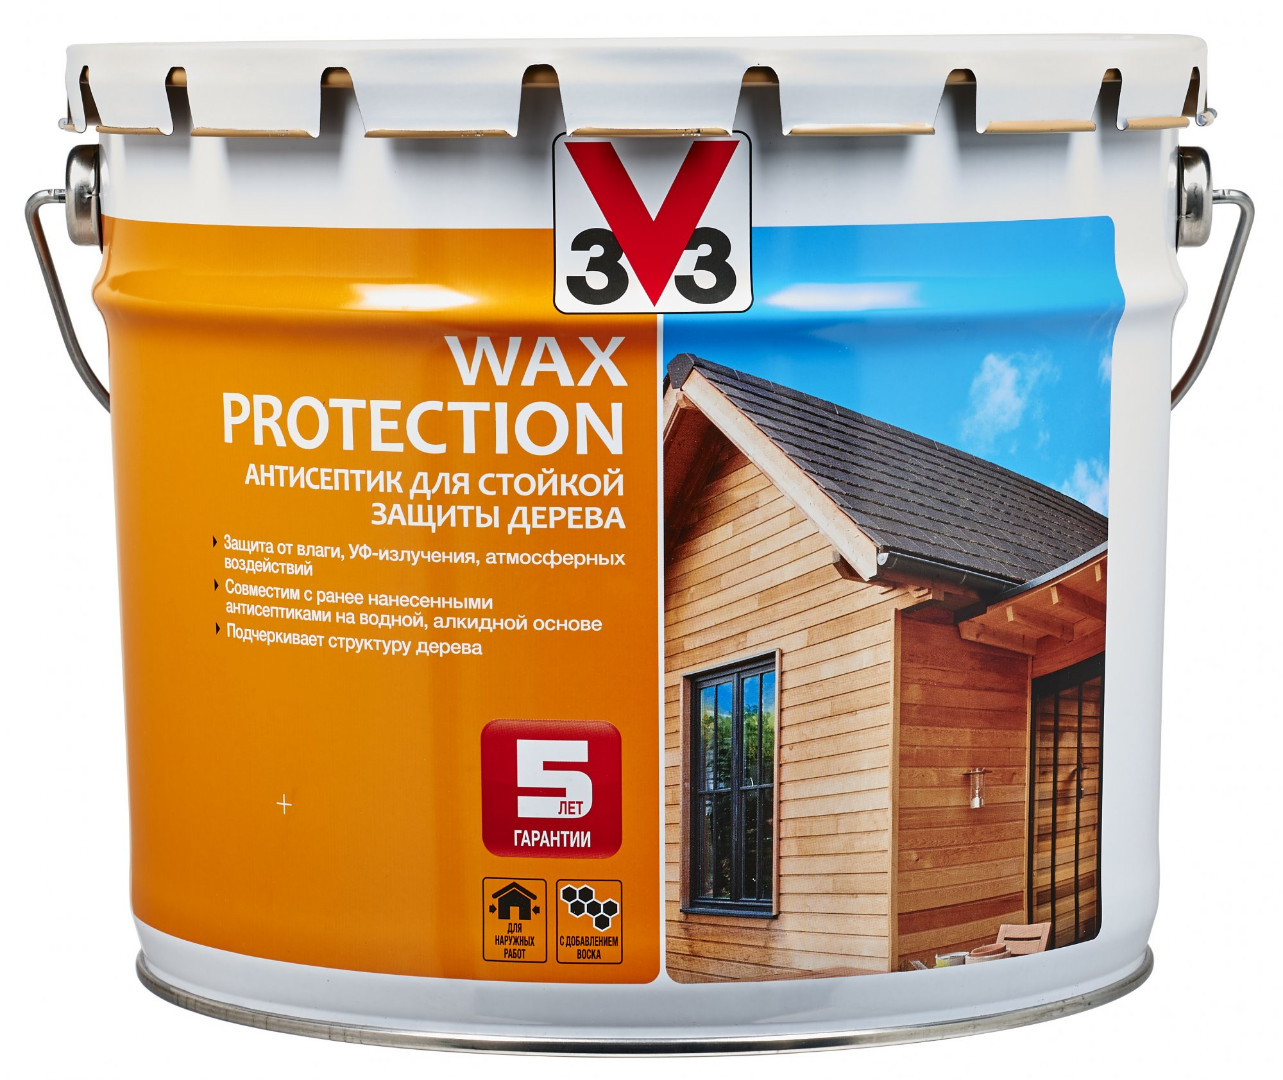 «Wax Protection» cтойкая защита древесины